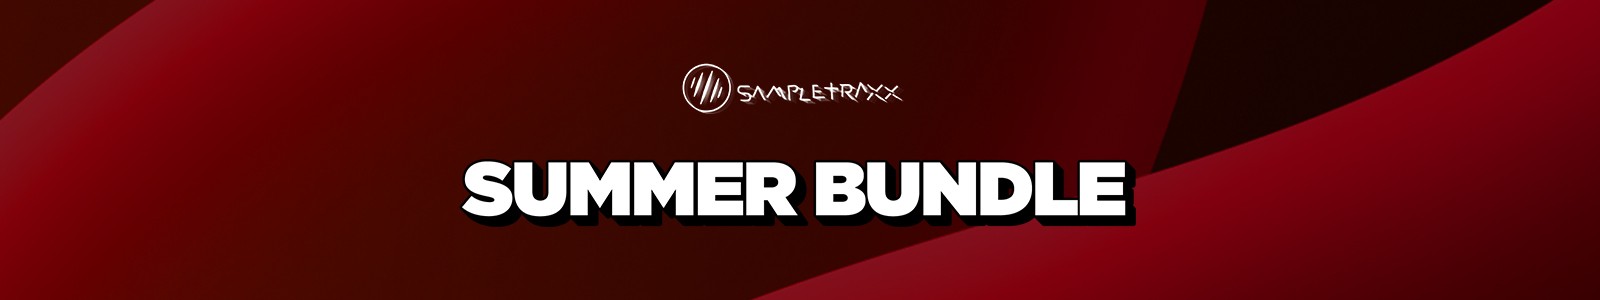 sampletraxx summer bundle